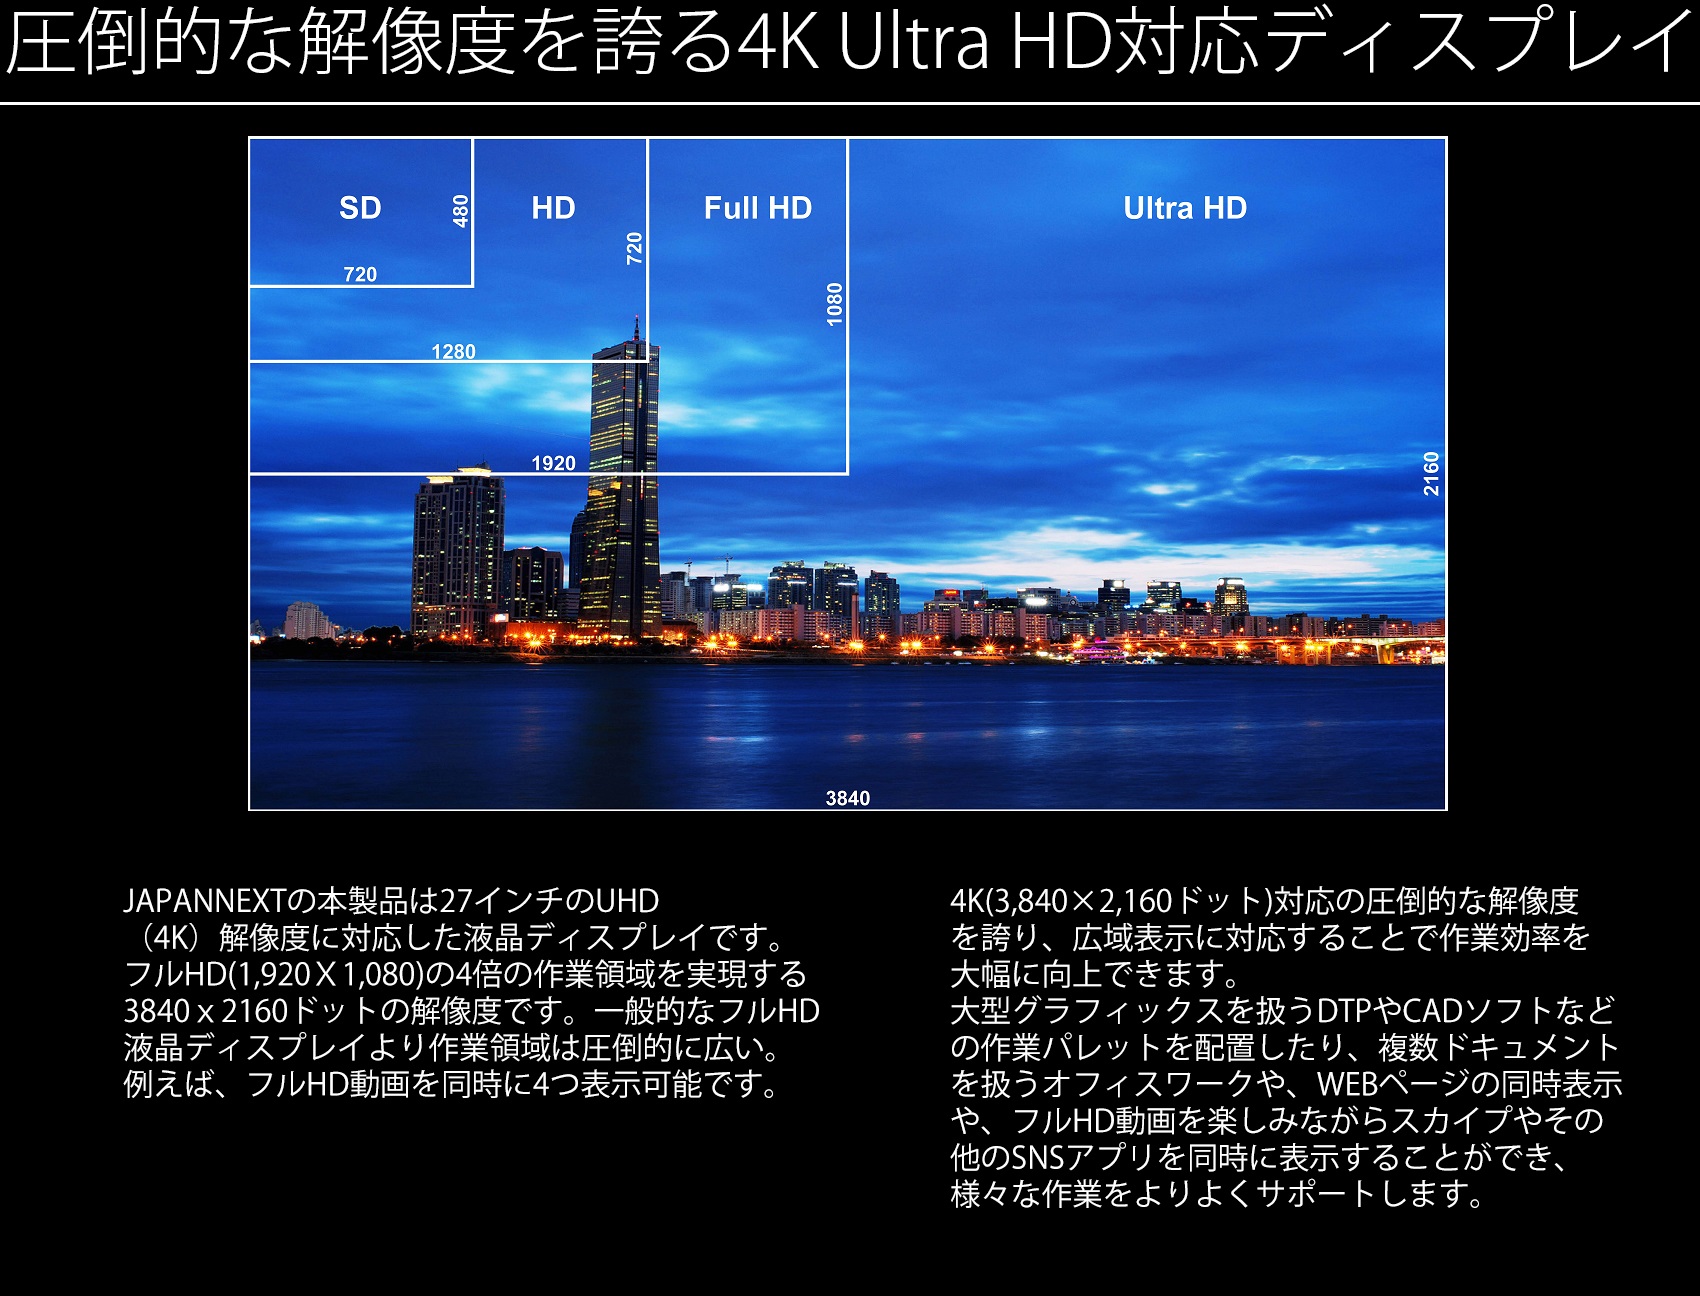 (4K)解像度に対応した液晶ディスプレイです。 フルHD(1,920×1,080)の4倍の作業領域を実現する 3840x2160ドットの解像度です。一般的なフルHD 液晶ディスプレイより作業領域は圧倒的に広い。 例えば、フルHD動画を同時に4つ表示可能です。 4K(3,840×2,160ドット)対応の圧倒的な解像度 を誇り、広域表示に対応することで作業効率を 大幅に向上できます。 大型グラフィックスを扱うDTPやCADソフトなど の作業パレットを配置したり、複数ドキュメント を扱うオフィスワークや、WEBページの同時表示 や、フルHD動画を楽しみながらスカイプやその 他のSNSアプリを同時に表示することができ、 様々な作業をよりよくサポートします。